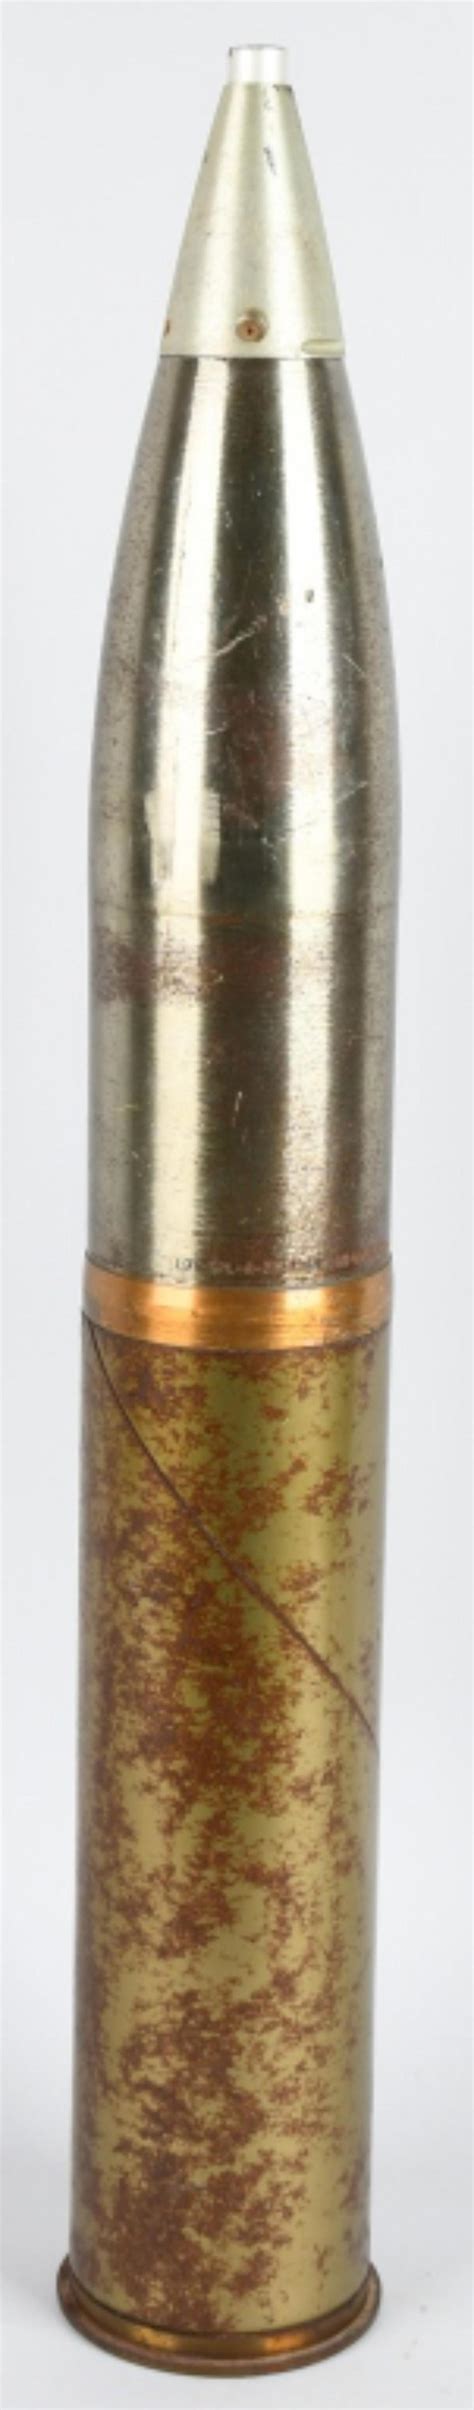 Vietnam War Dated 105mm Artillery Shell Inert